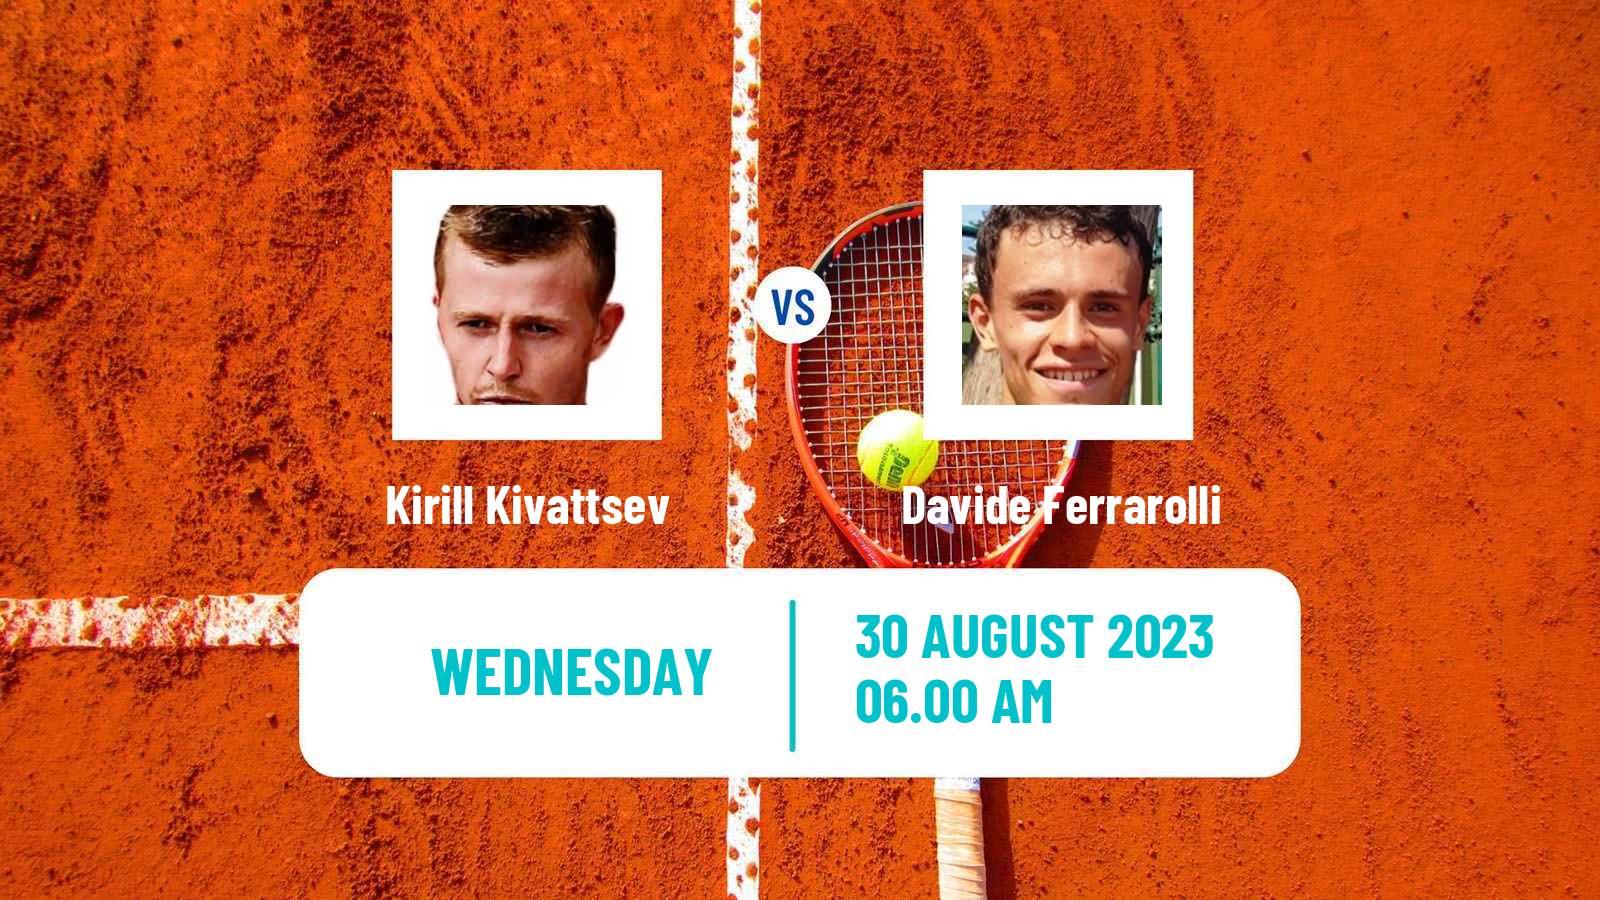 Tennis ITF M25 MarIBOr Men 2023 Kirill Kivattsev - Davide Ferrarolli